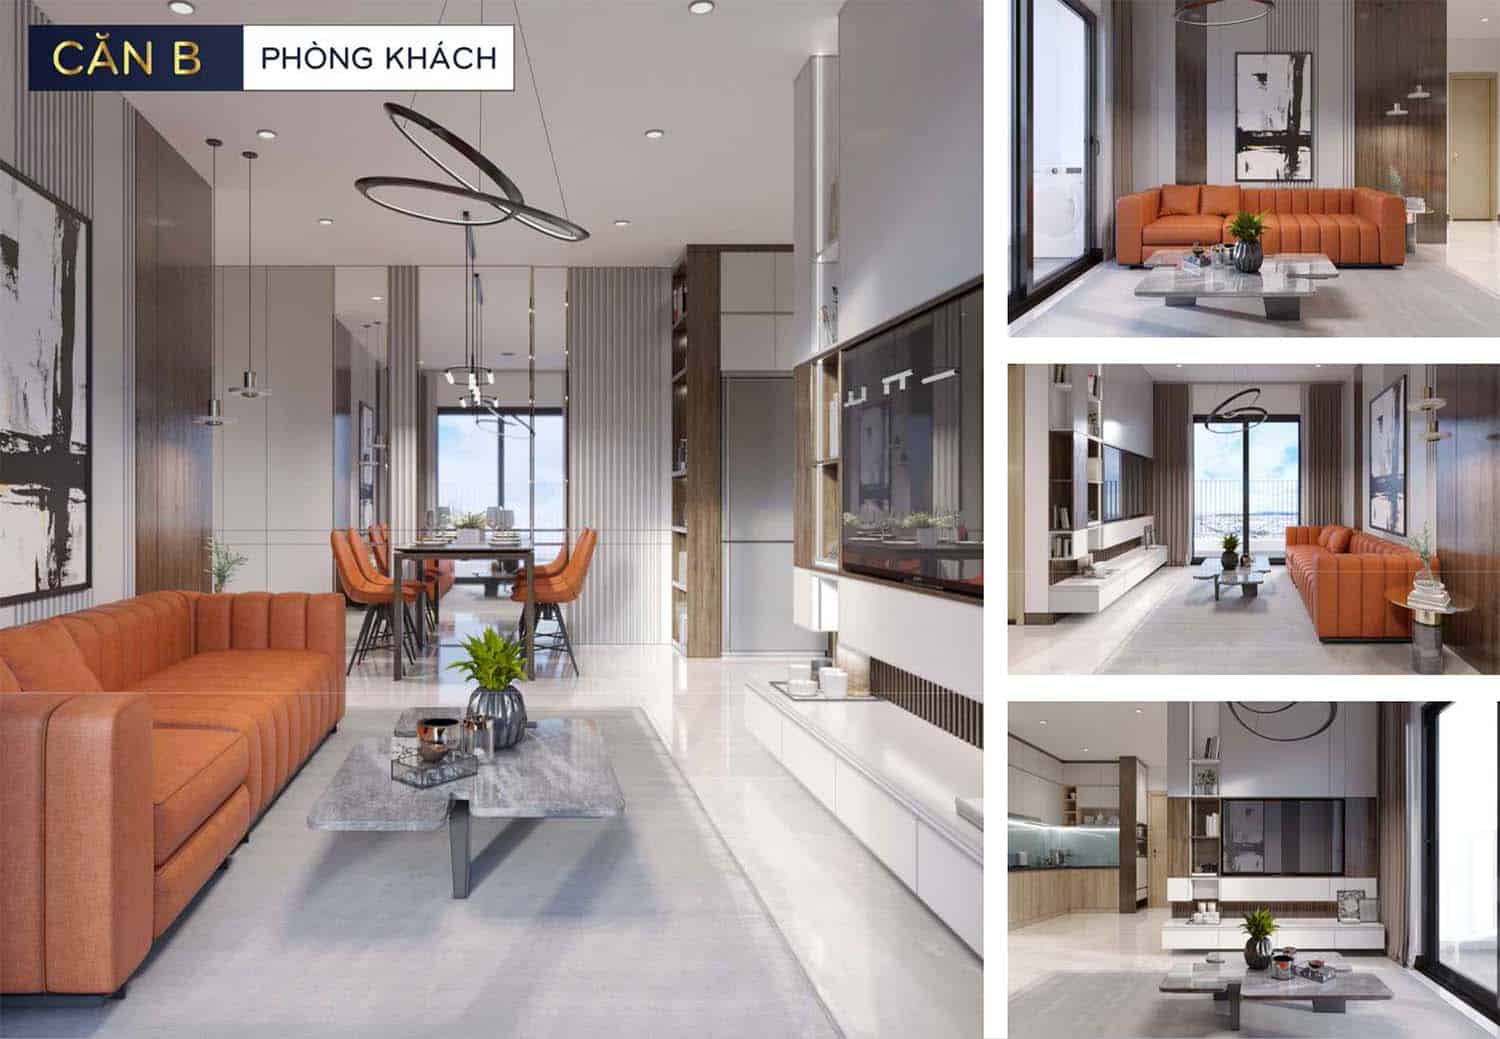 Hình ảnh thiết kế nhà mẫu Bcons Polaris căn B phòng khách